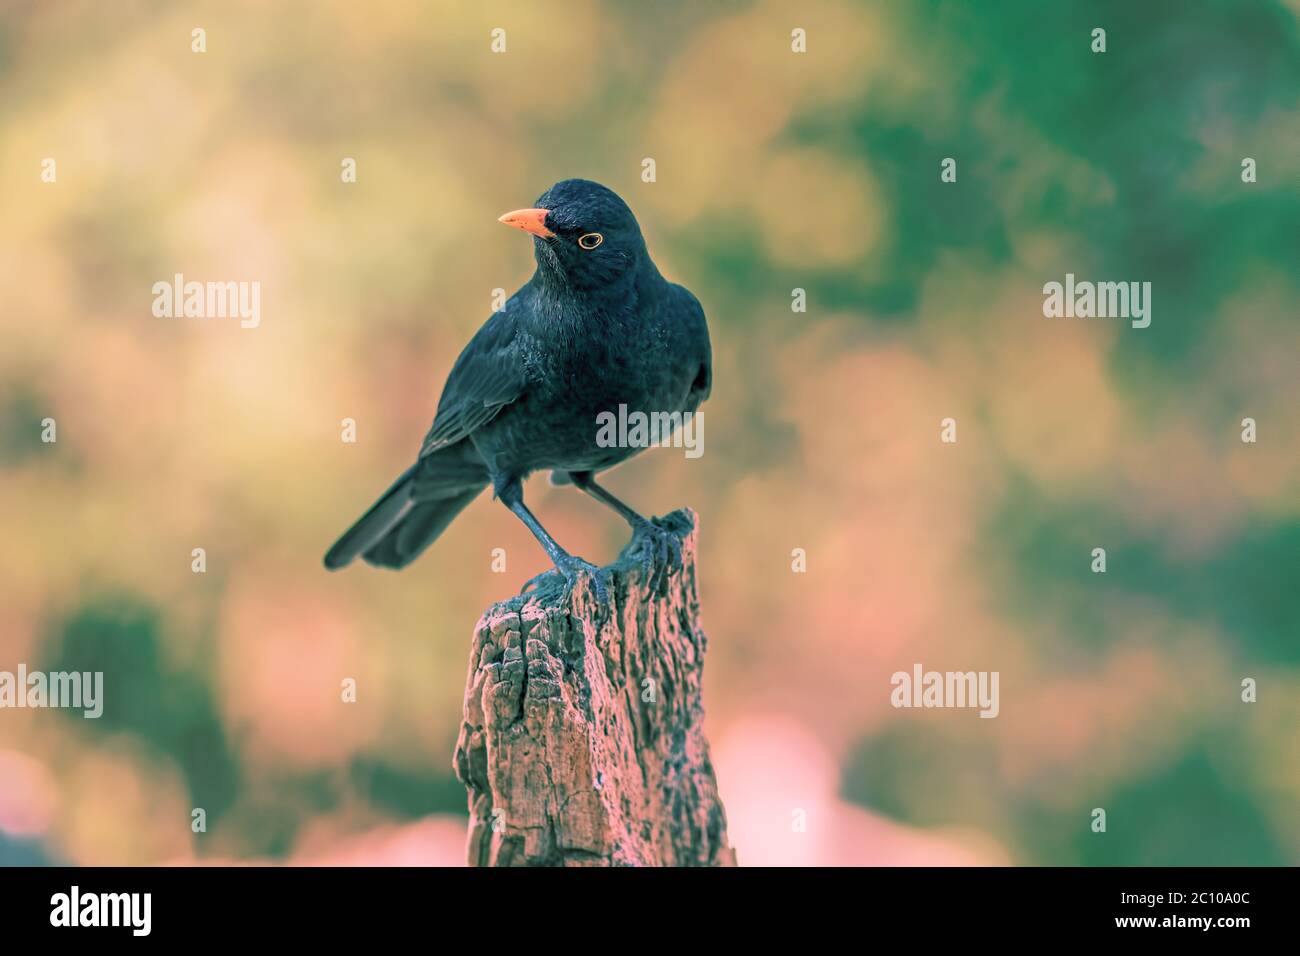 Blackbird. Pájaro del jardín de la hora dorada al amanecer o al atardecer. Imagen de la fauna del ave negra masculina (Turdus merula). Retrato fotografía de naturaleza con borrosa b Foto de stock